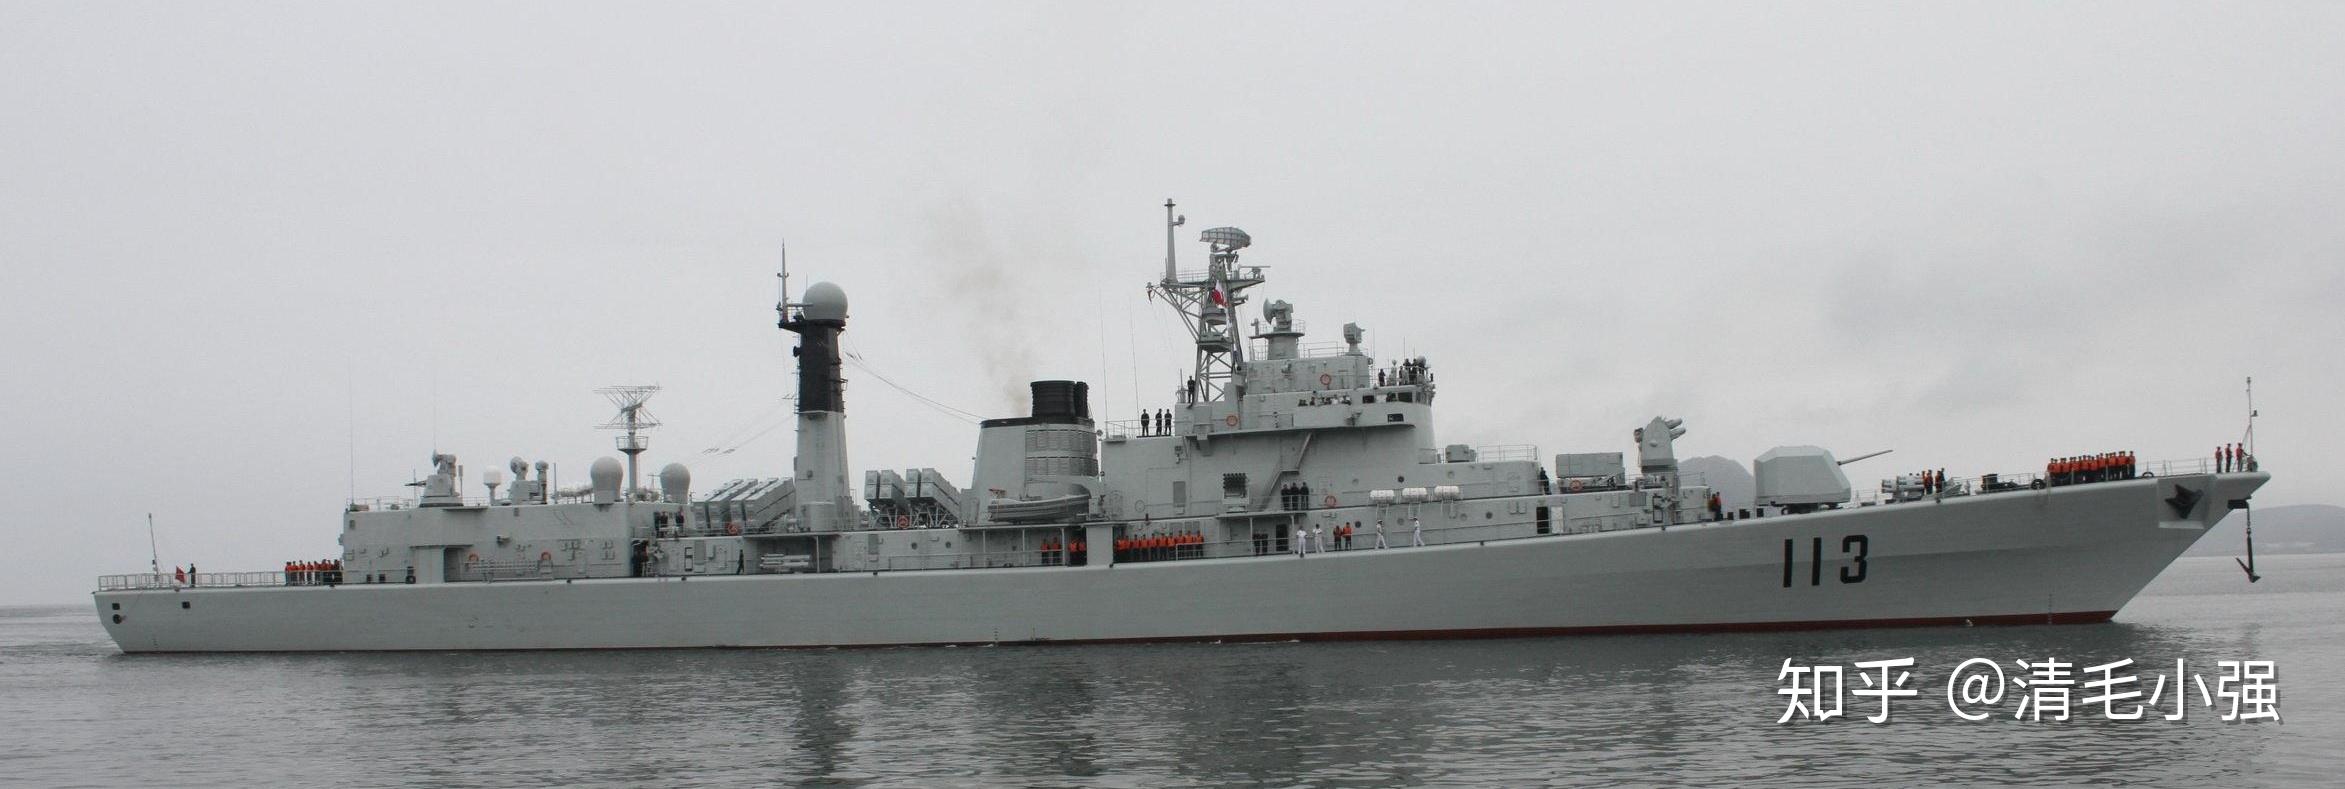 052型驱逐舰只建造两艘,即1994年服役的首舰112"哈尔滨"号和1995年